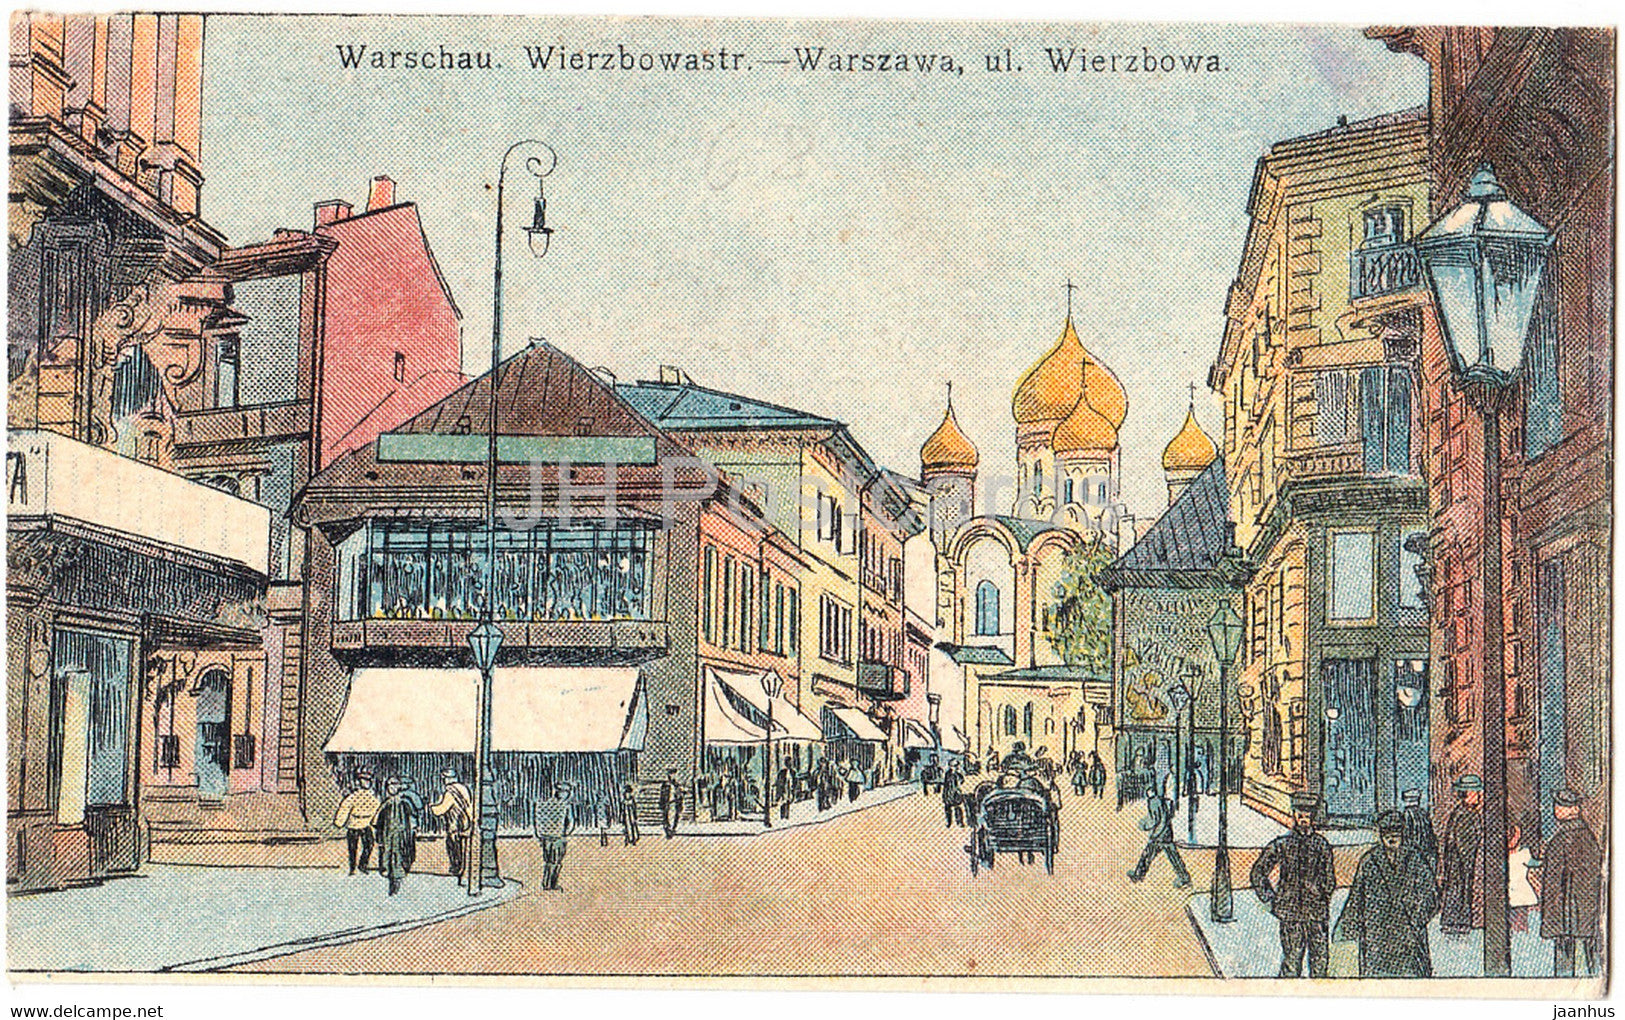 Warschau - Warszawa - Wierzbowastr - ul Wierzbowa - Feldpost - old postcard - 1915 - Poland - used - JH Postcards